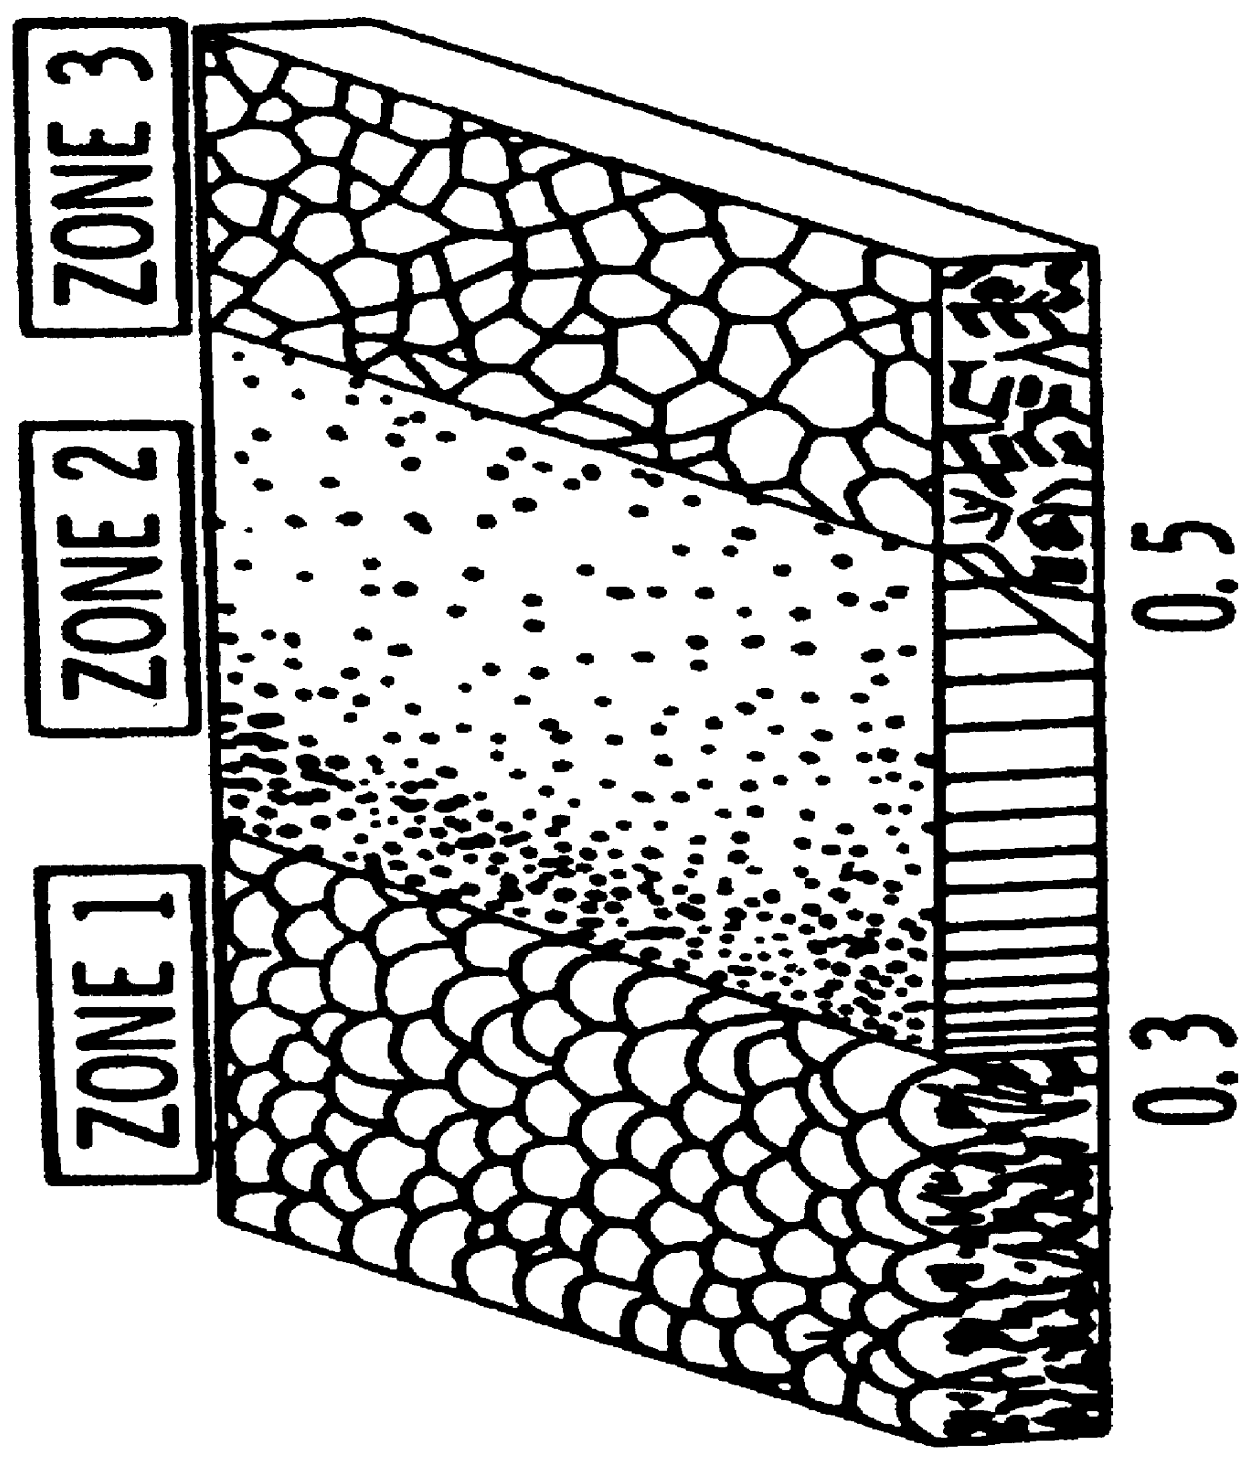 Ceramic coatings containing layered porosity